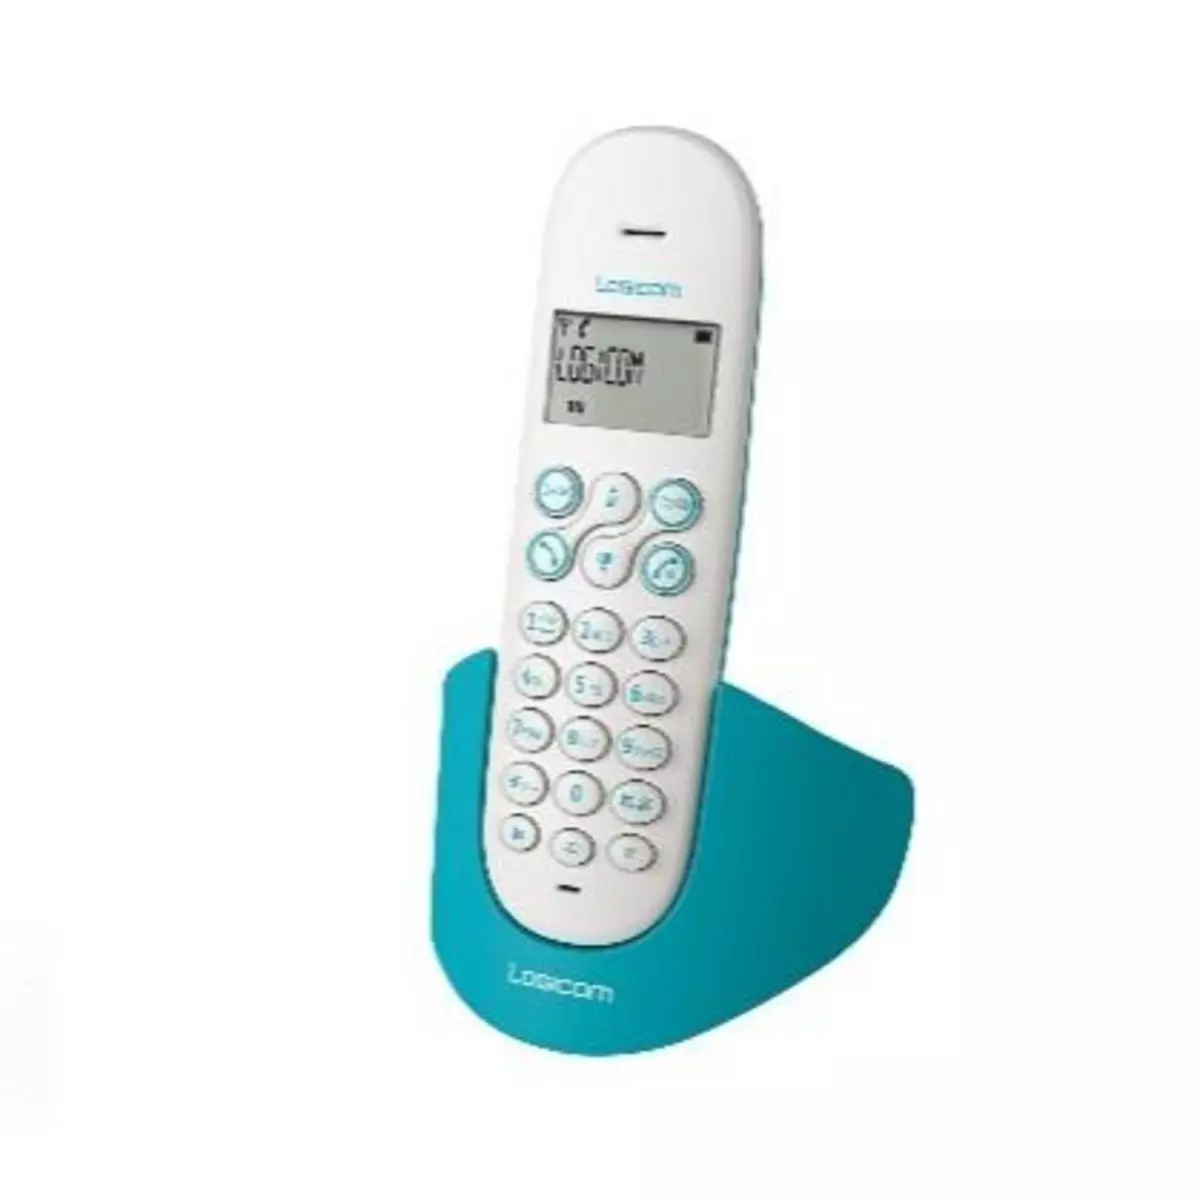 LOGICOM Téléphone DECT Luna 150 Turquoise Main libre répertoire de 20 contacts choix de 10 sonneries dont 5 polyphoniques